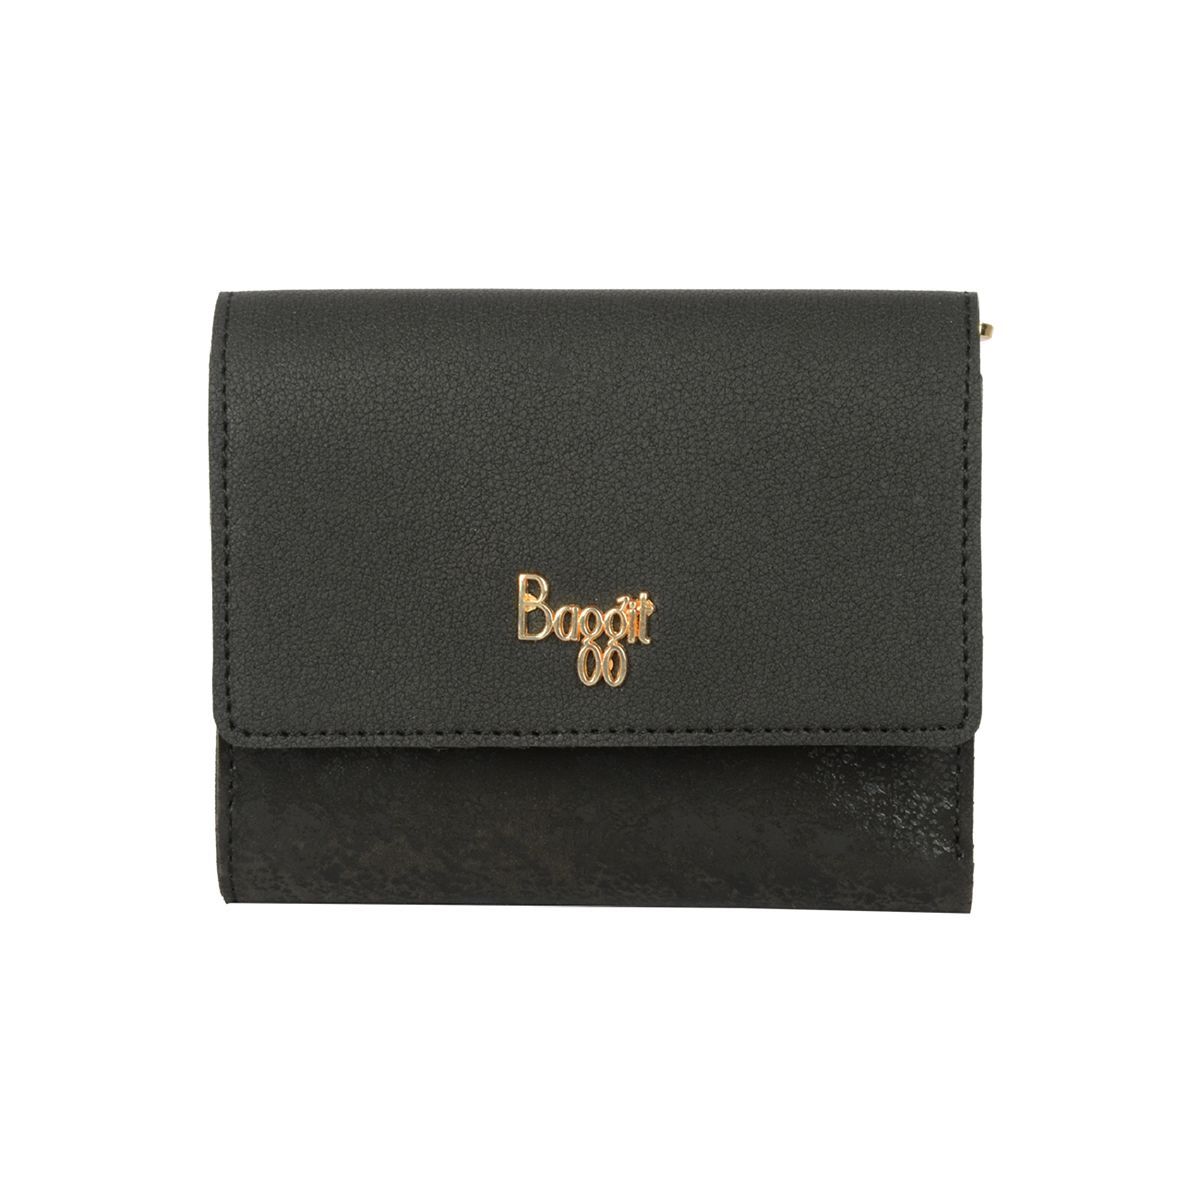 Buy Black Wallets for Women by BAGGIT Online